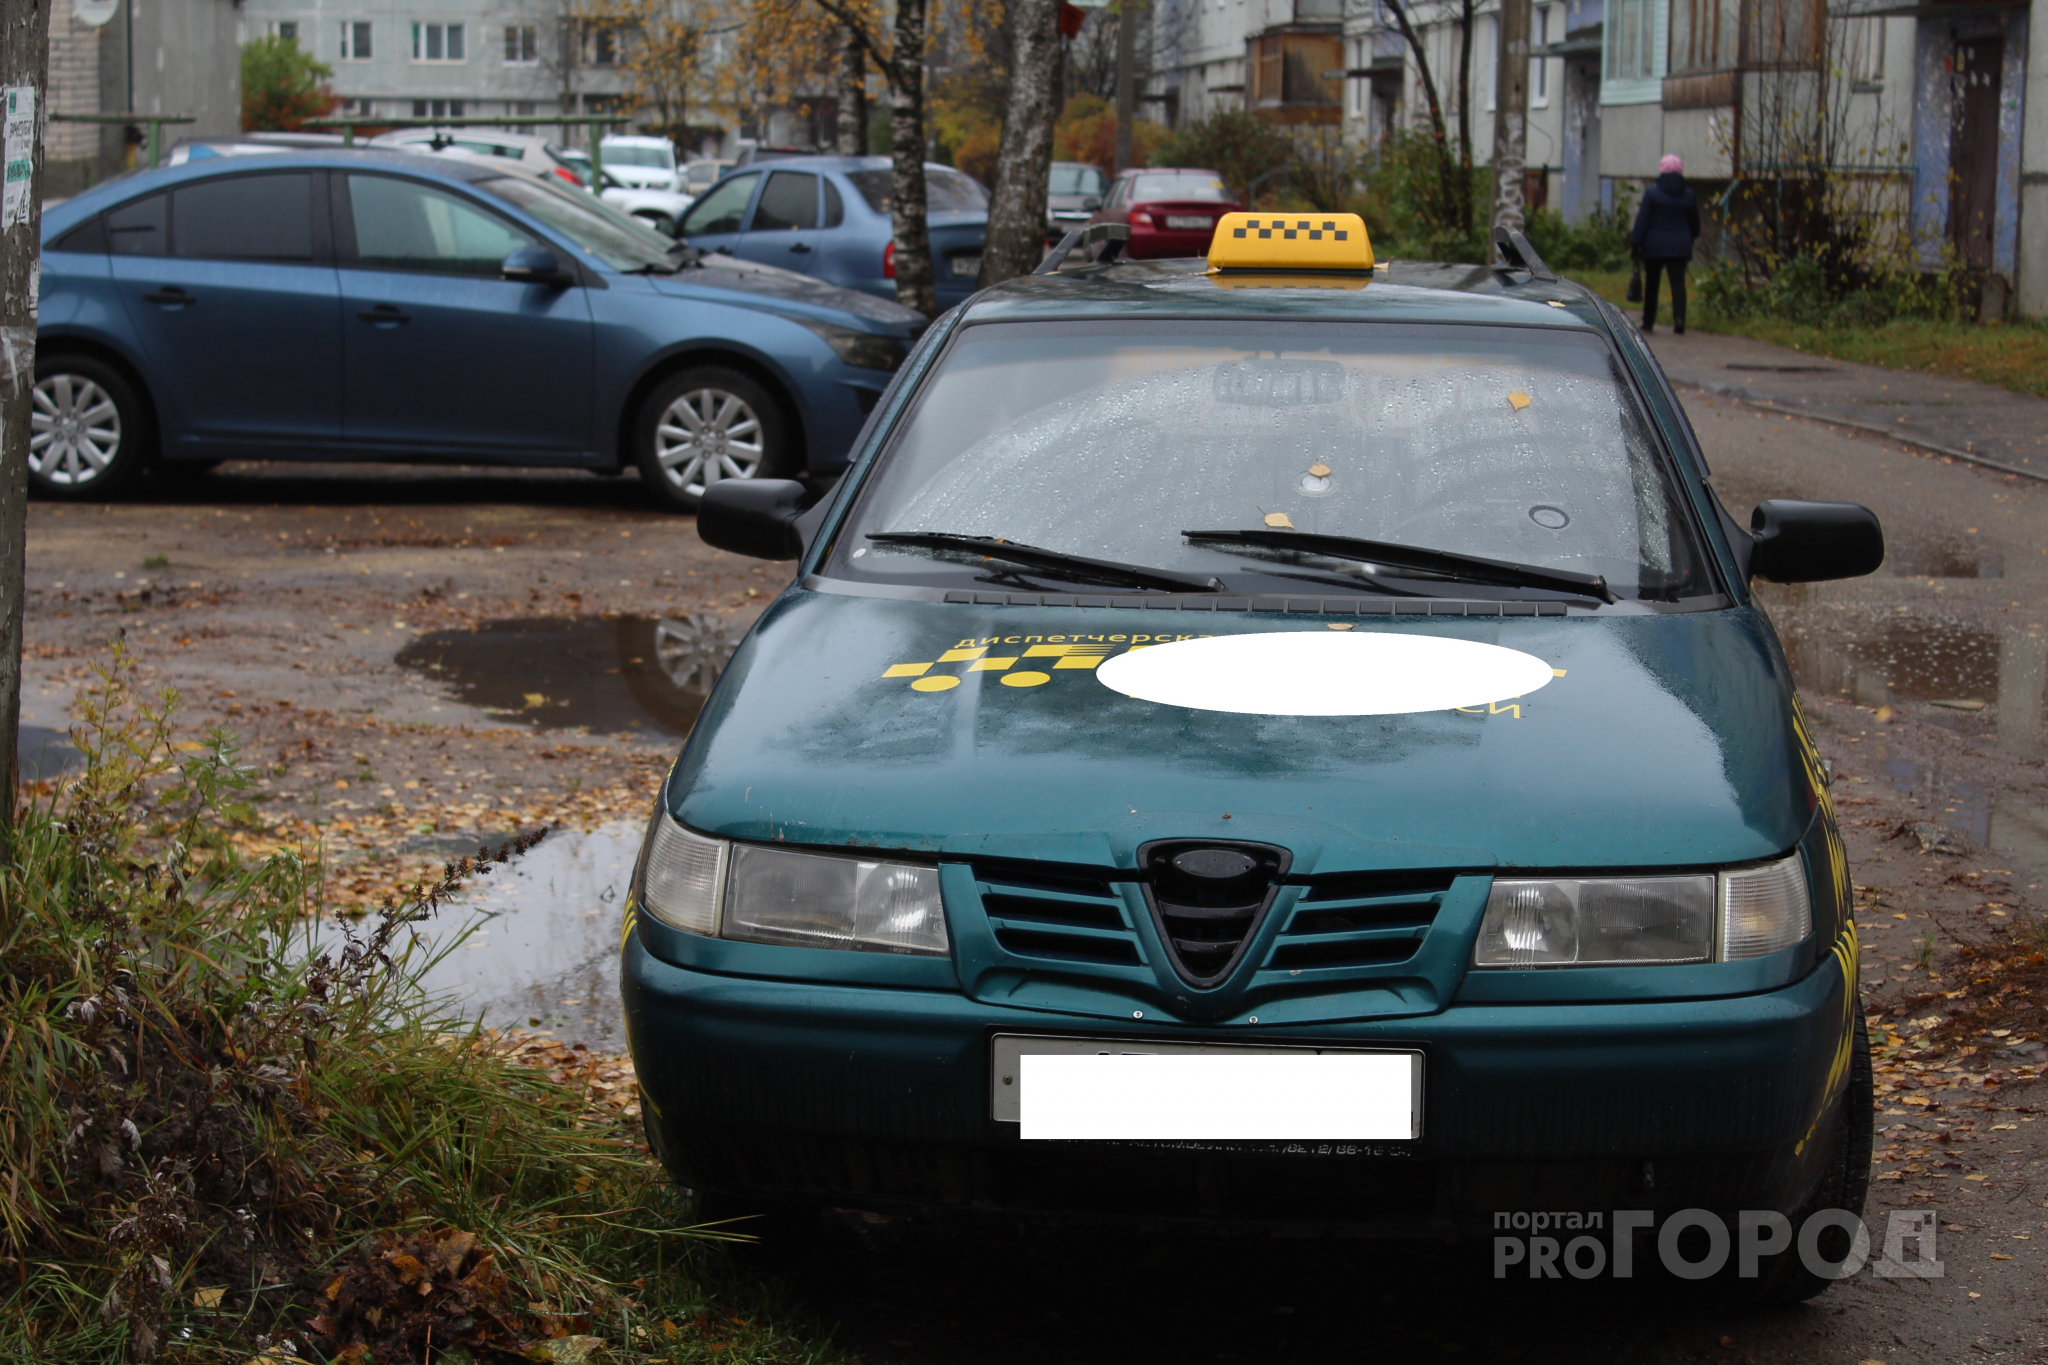 Сыктывкарцы предлагают объединить все такси в одну службу